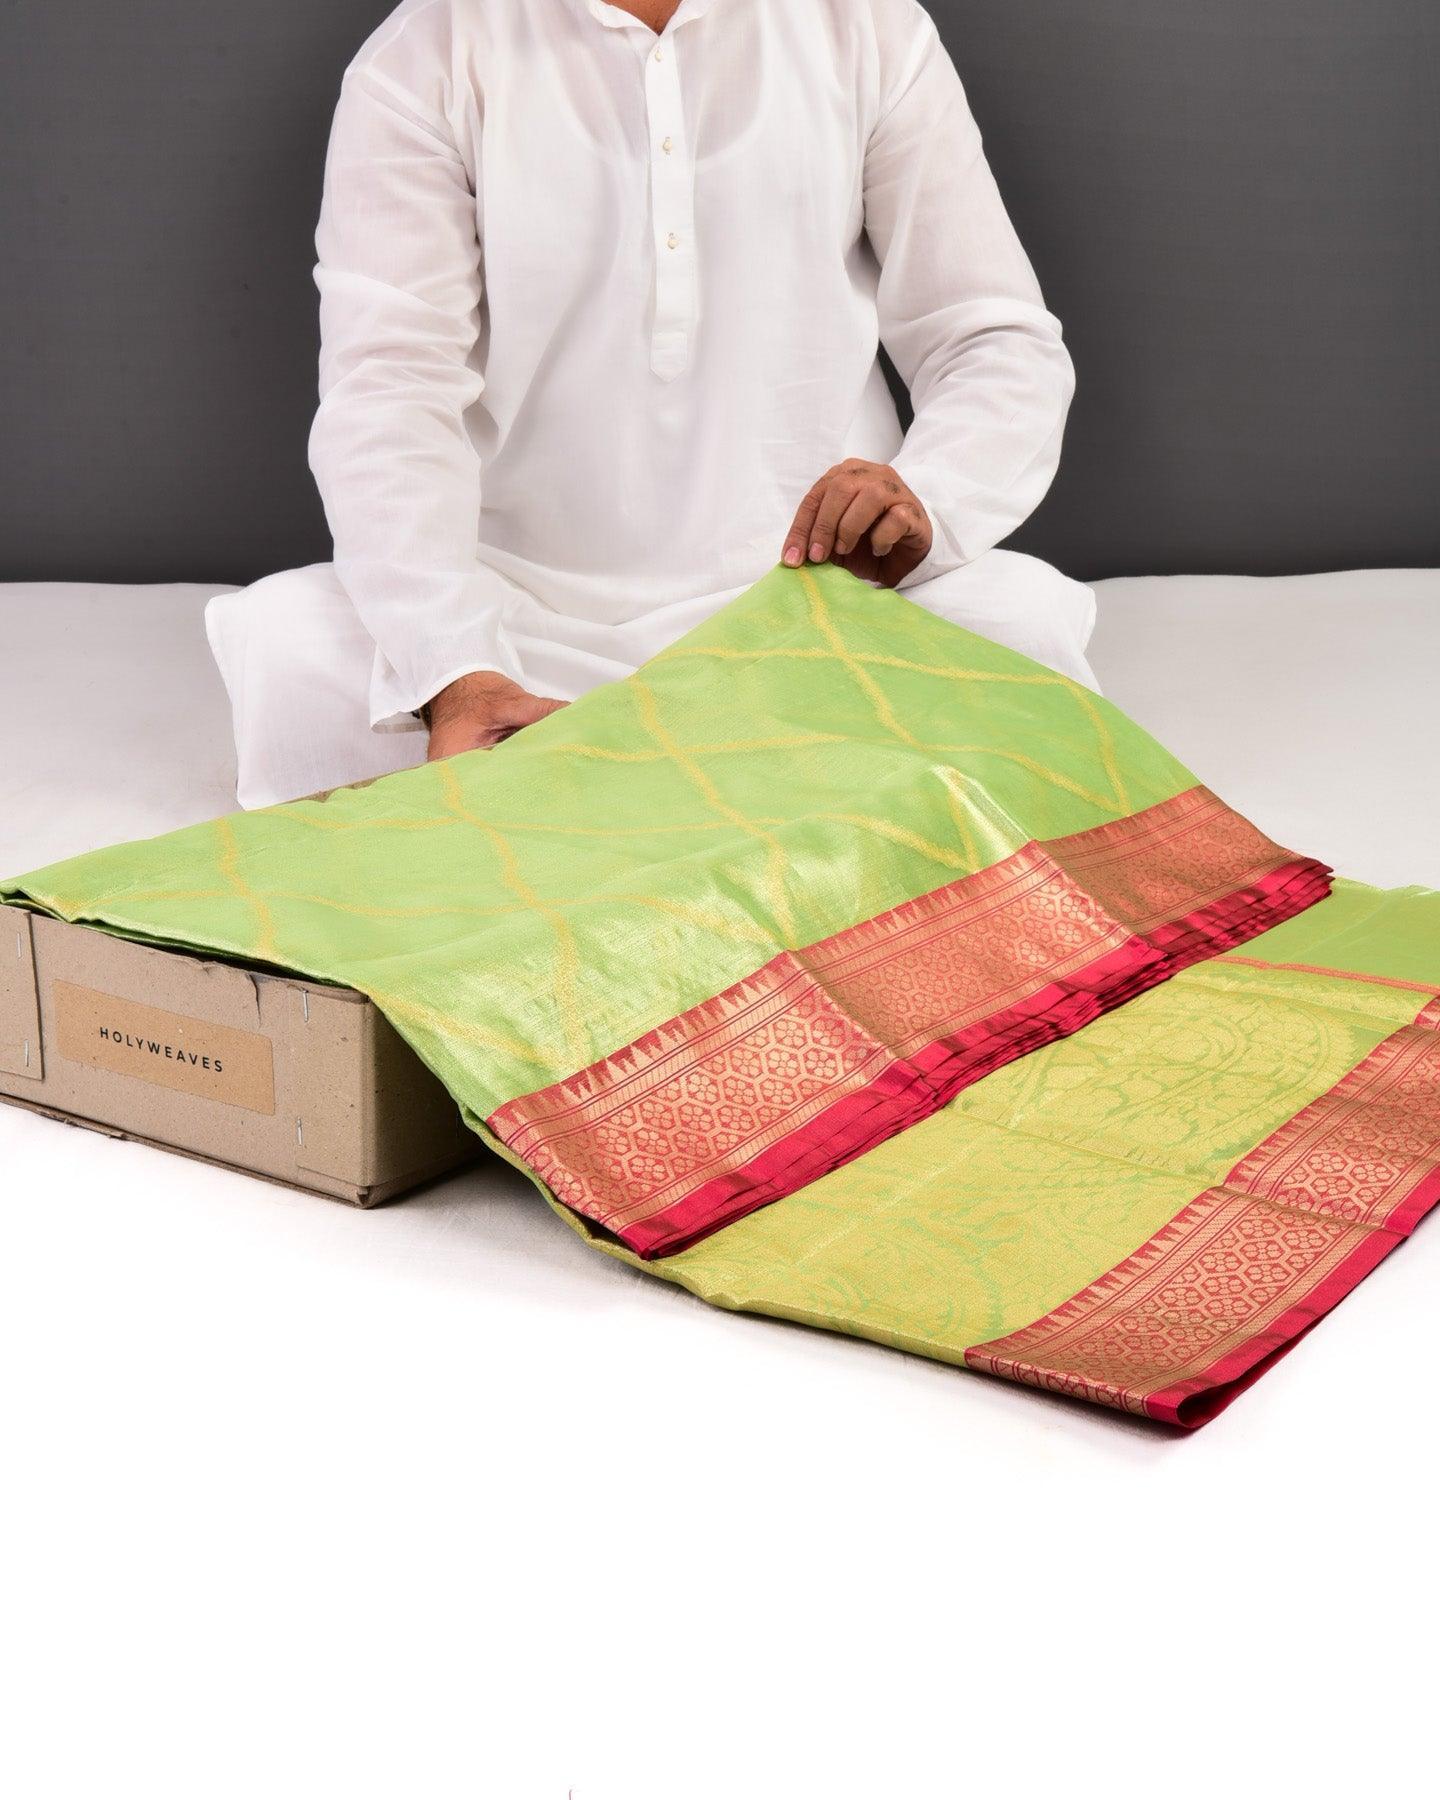 Green Banarasi Cutwork Brocade Woven Cotton Tissue Saree - By HolyWeaves, Benares